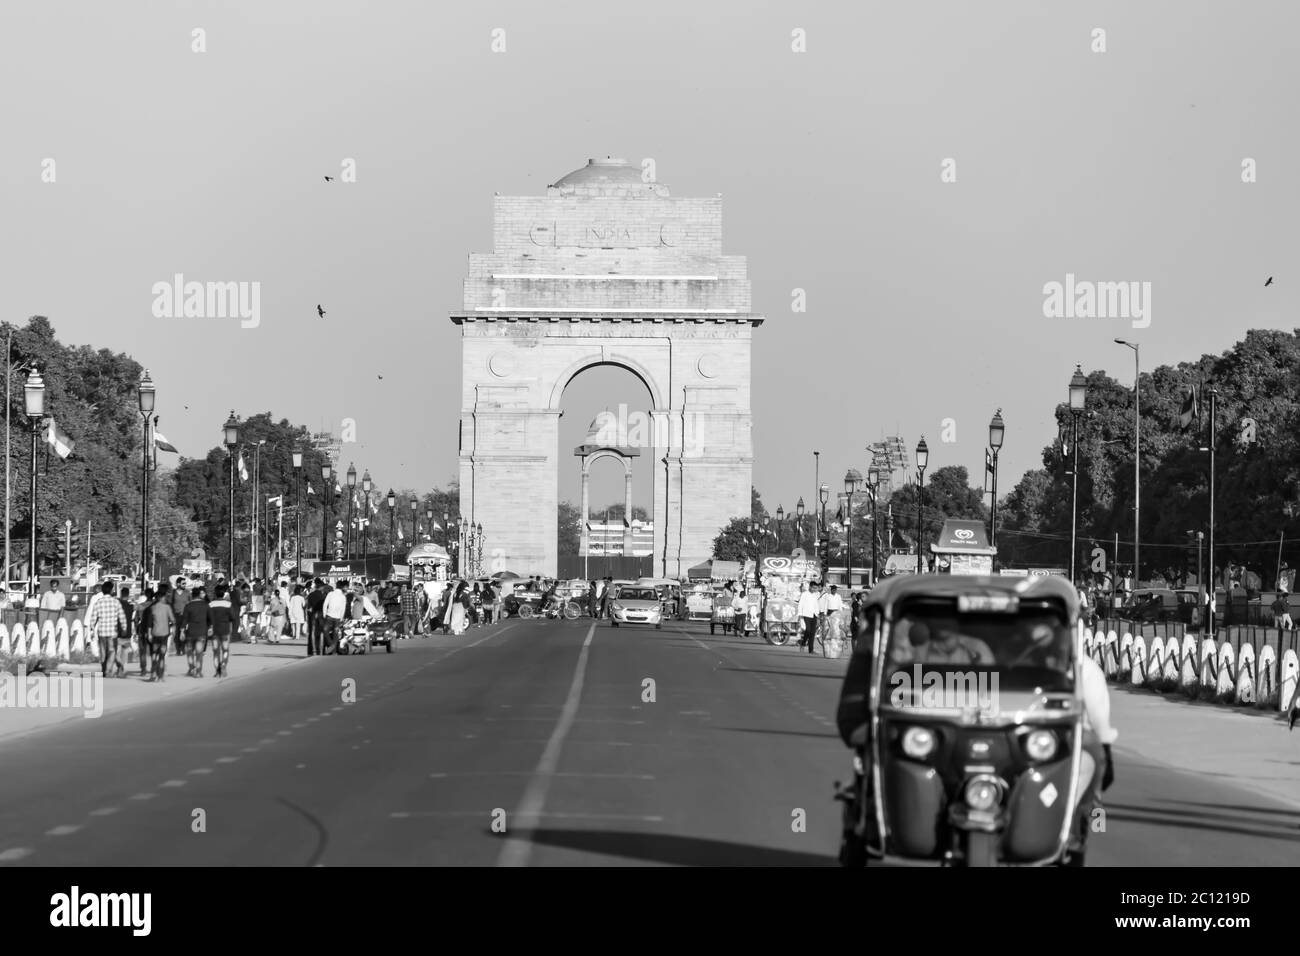 India Gate War Memorial situato a Nuova Delhi, India. India Gate è l'attrazione turistica più popolare da visitare a Nuova Delhi. Architettura dell'India . Foto Stock